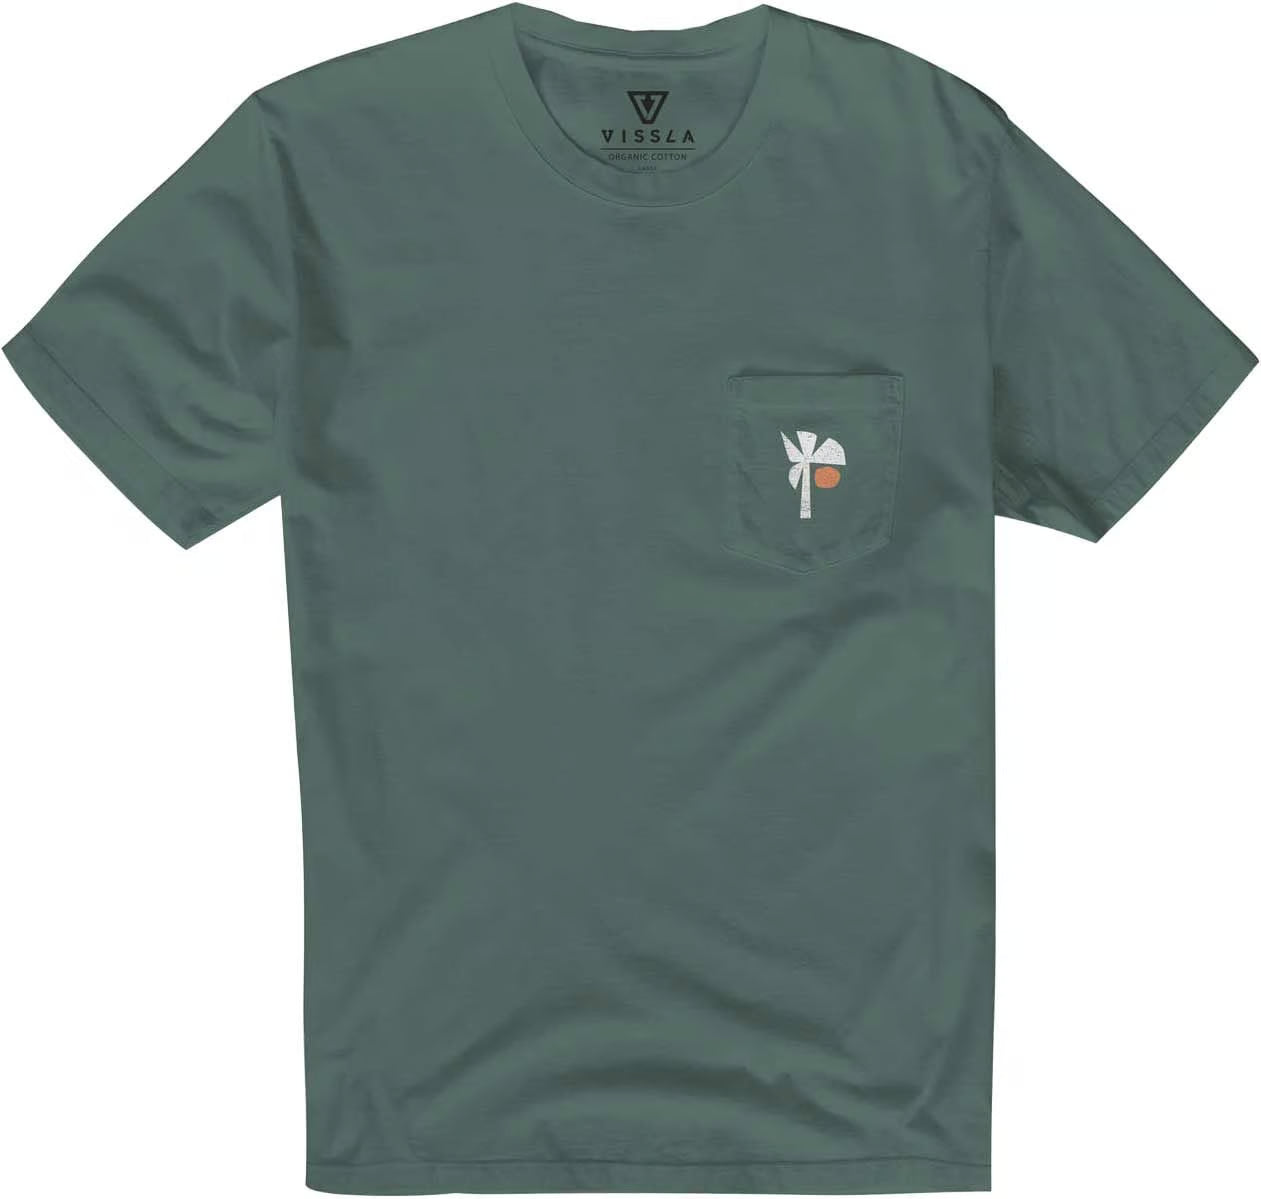 T-Shirt Ecology Center Premium - Coton